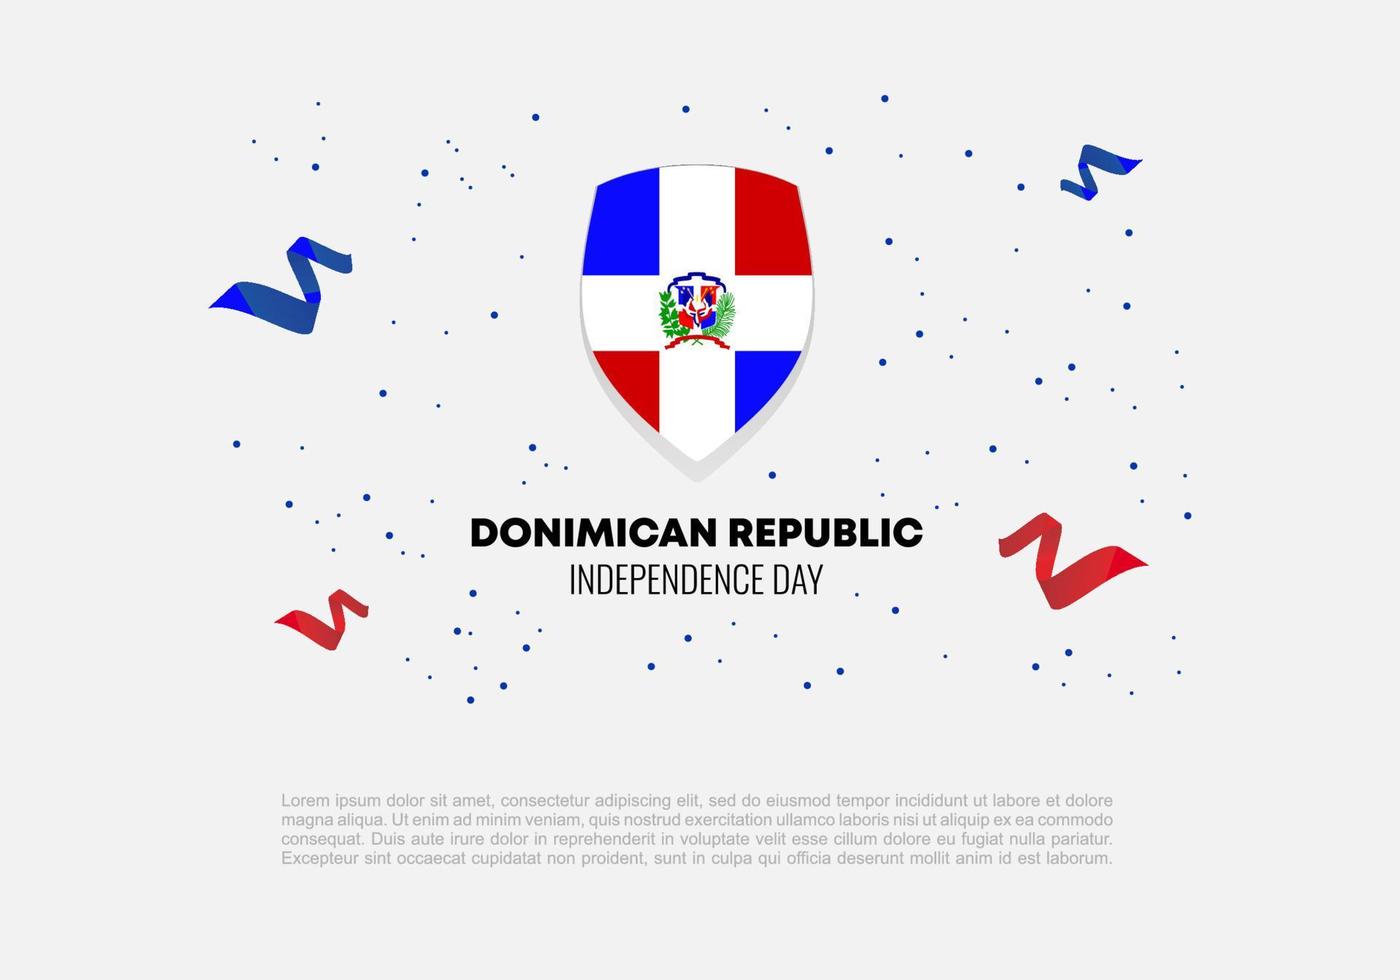 celebração nacional do dia da independência dominicana em 27 de fevereiro. vetor